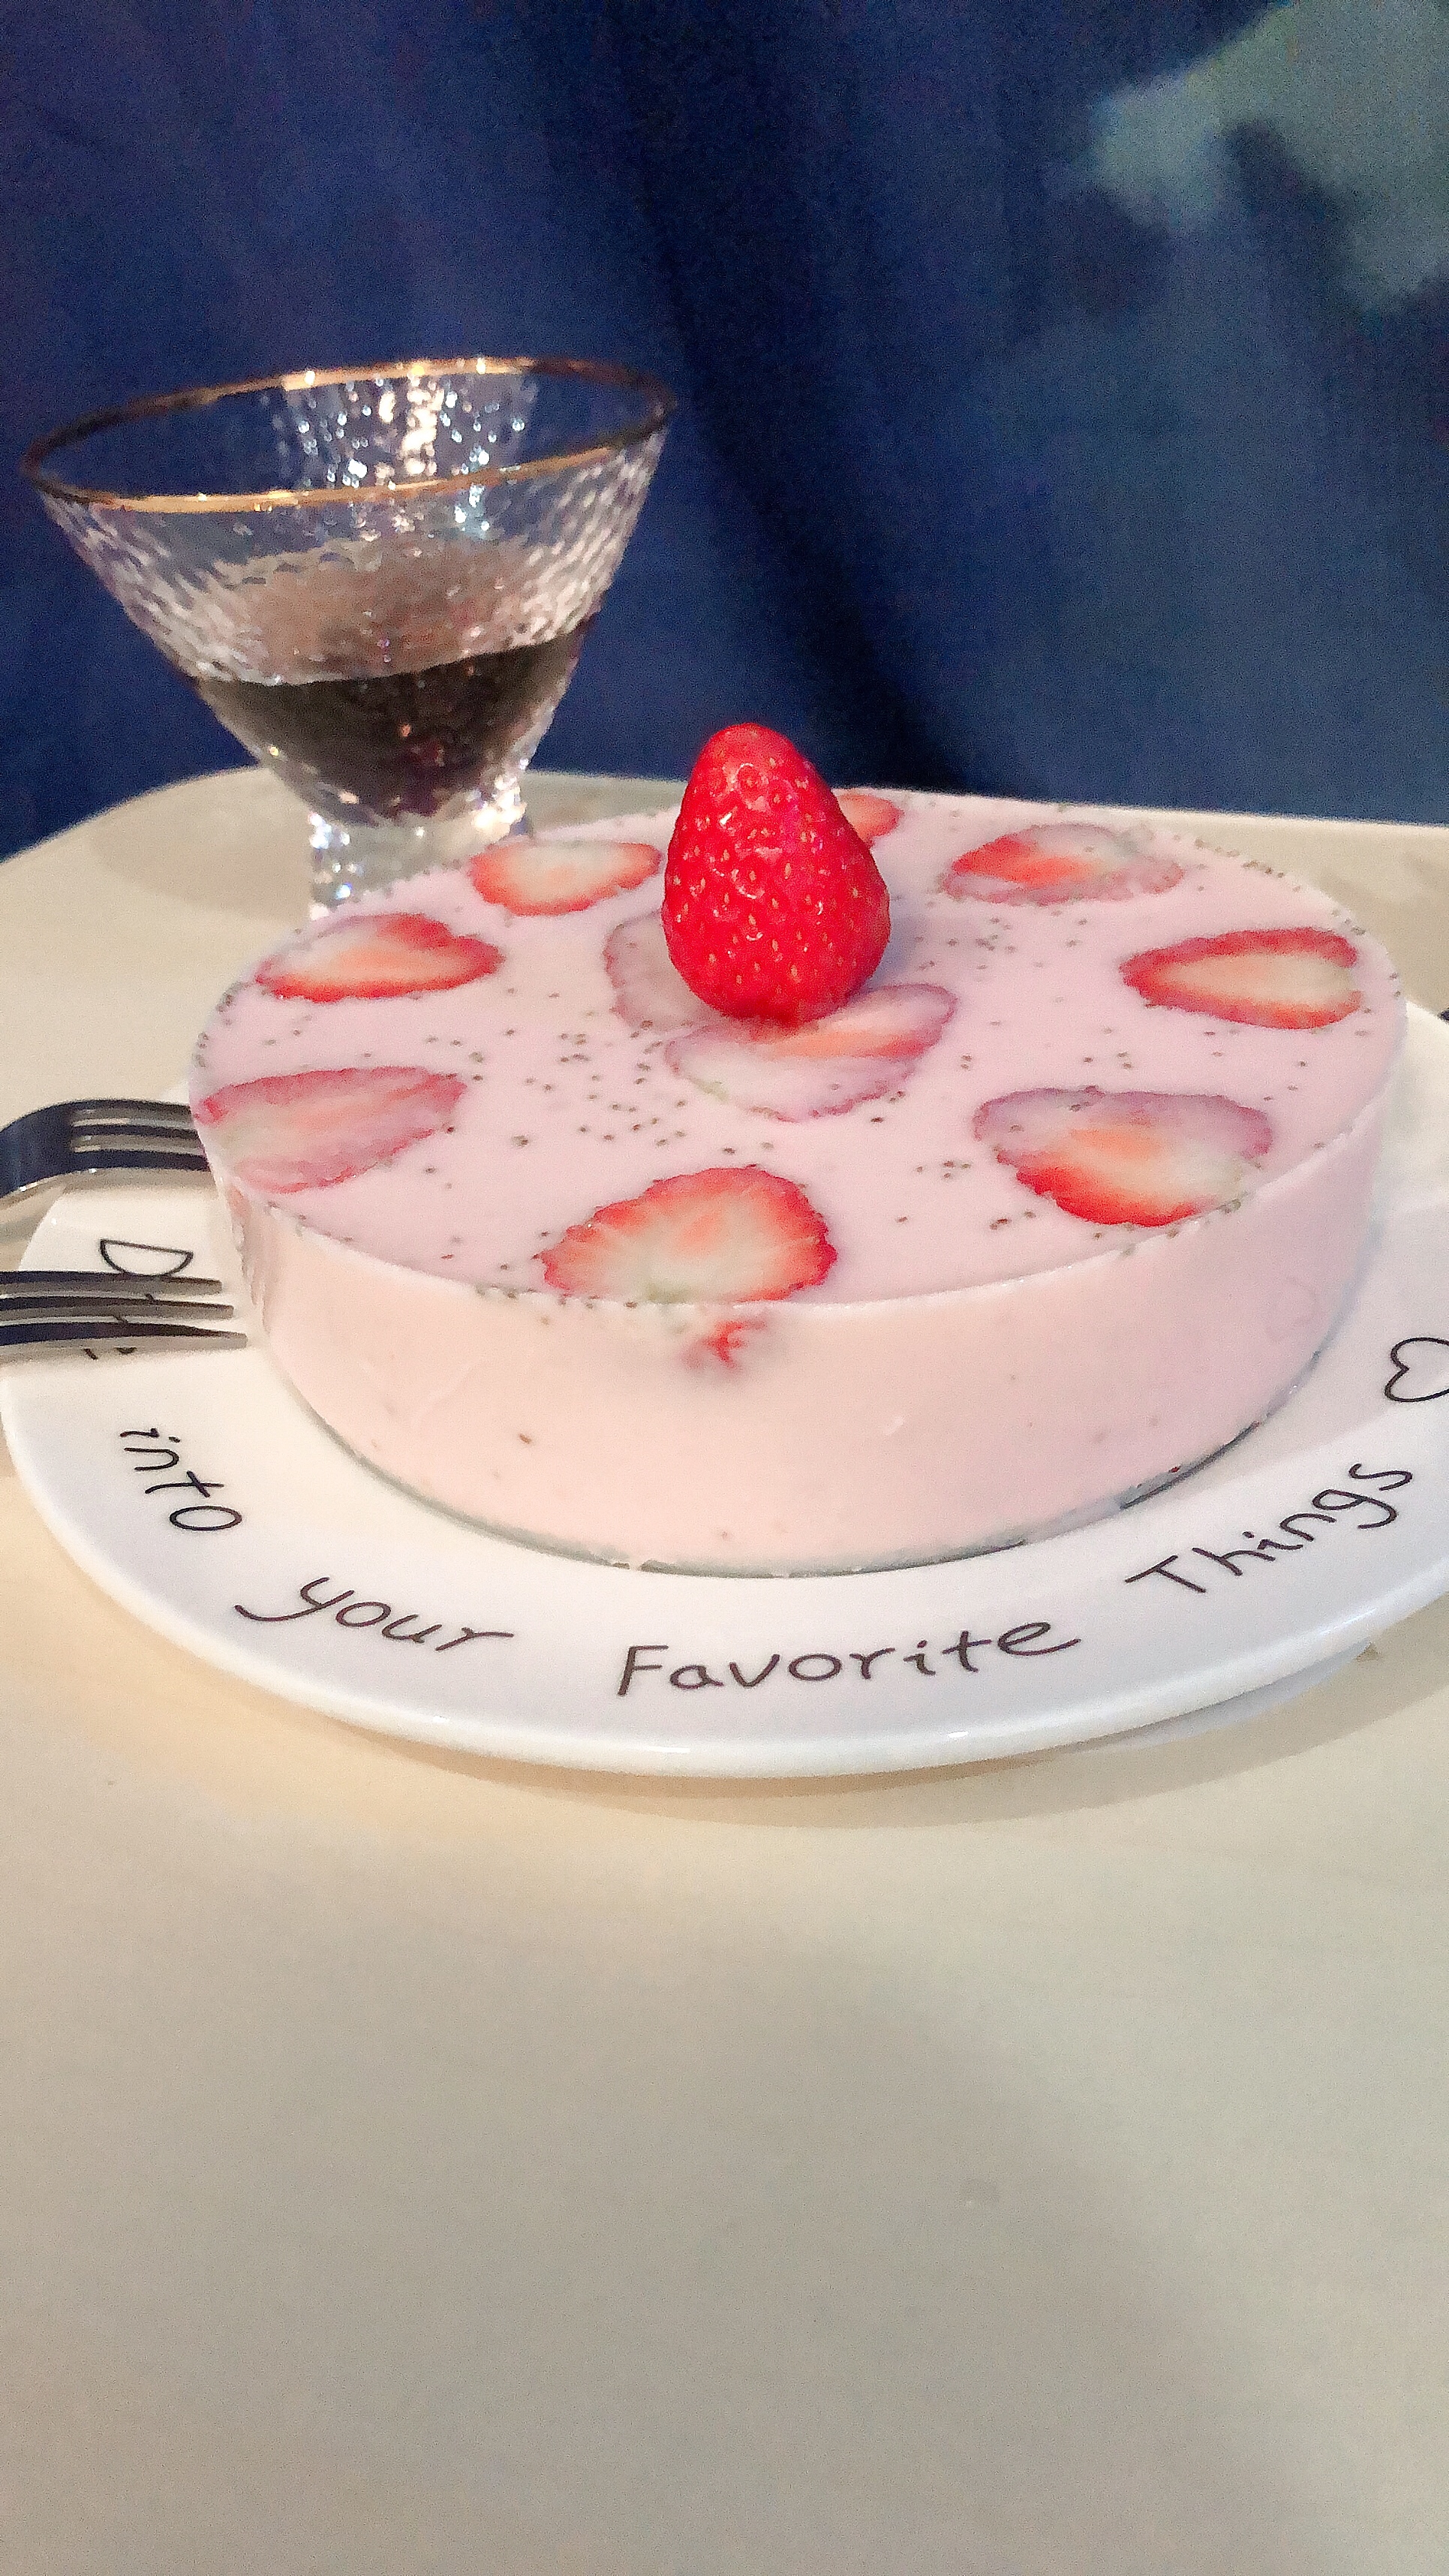 草莓酸奶布丁的做法